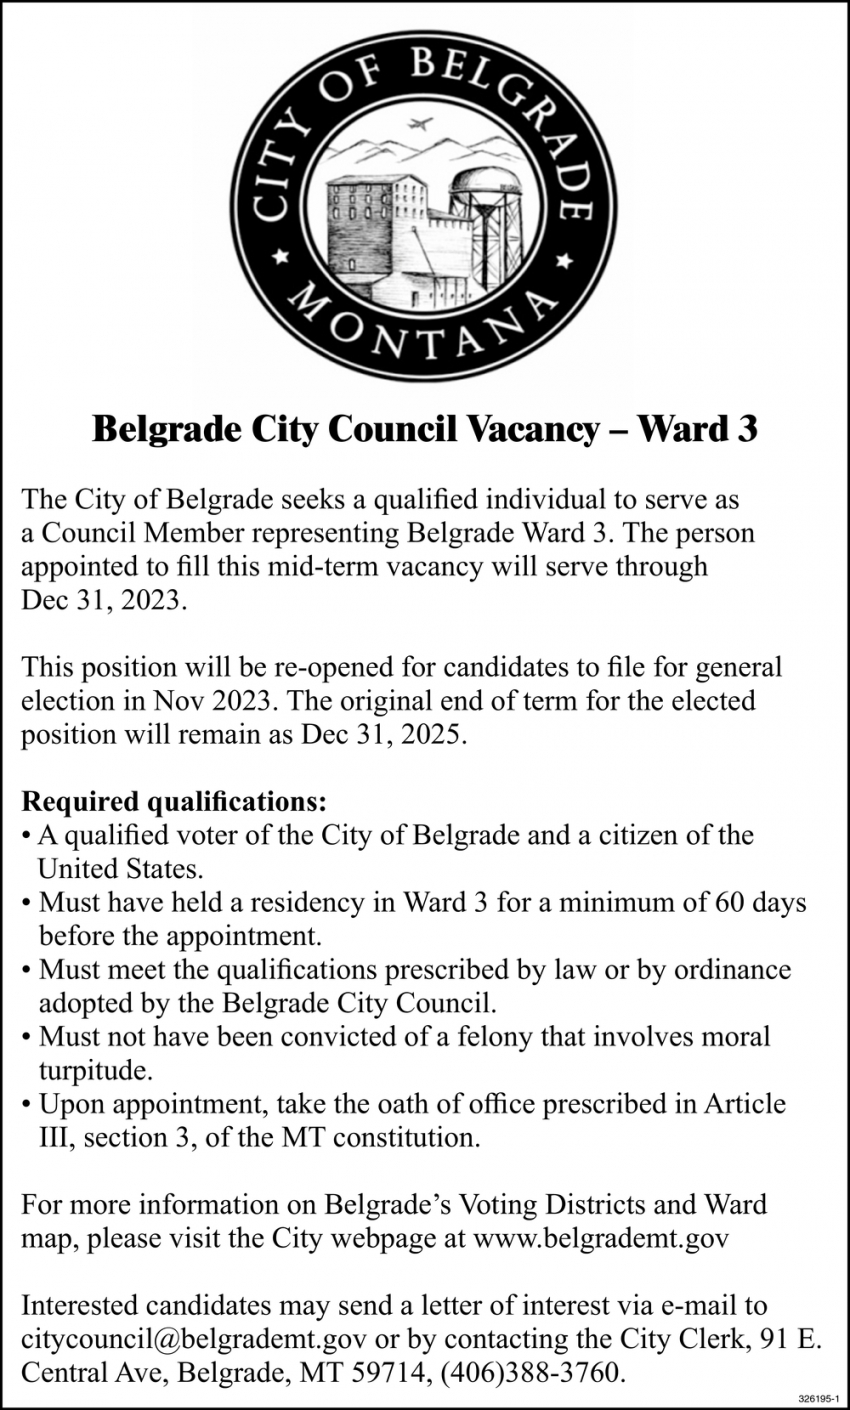 Belgrade City Council Vacancy